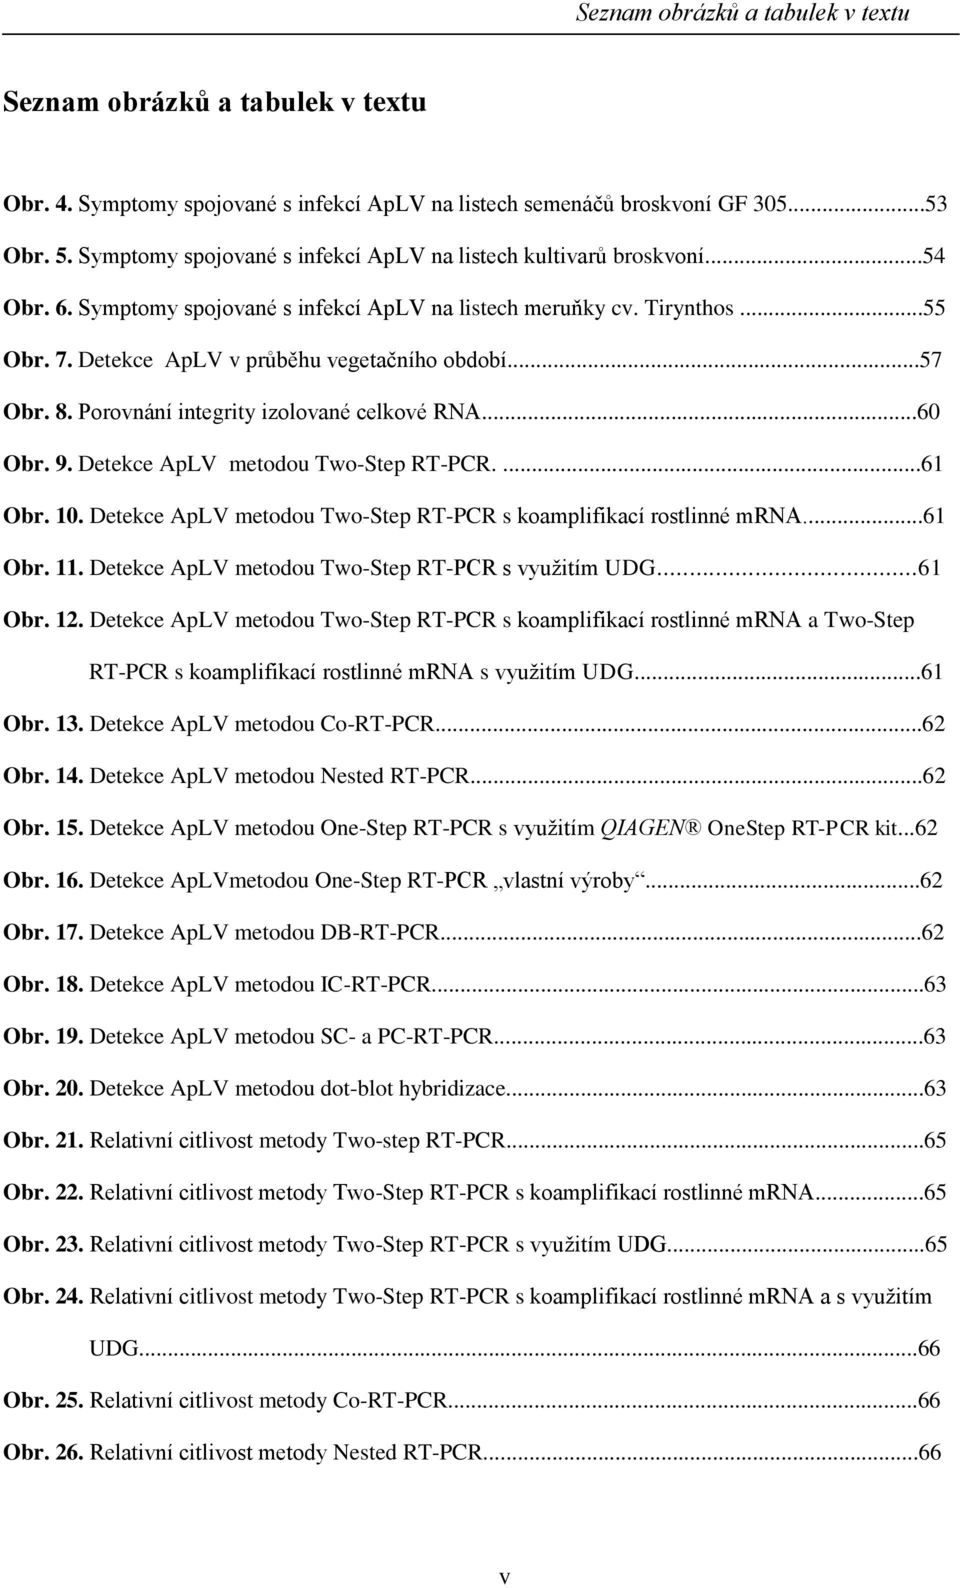 ..57 Obr. 8. Porovnání integrity izolované celkové RNA...60 Obr. 9. Detekce ApLV metodou Two-Step RT-PCR....61 Obr. 10. Detekce ApLV metodou Two-Step RT-PCR s koamplifikací rostlinné mrna...61 Obr. 11.